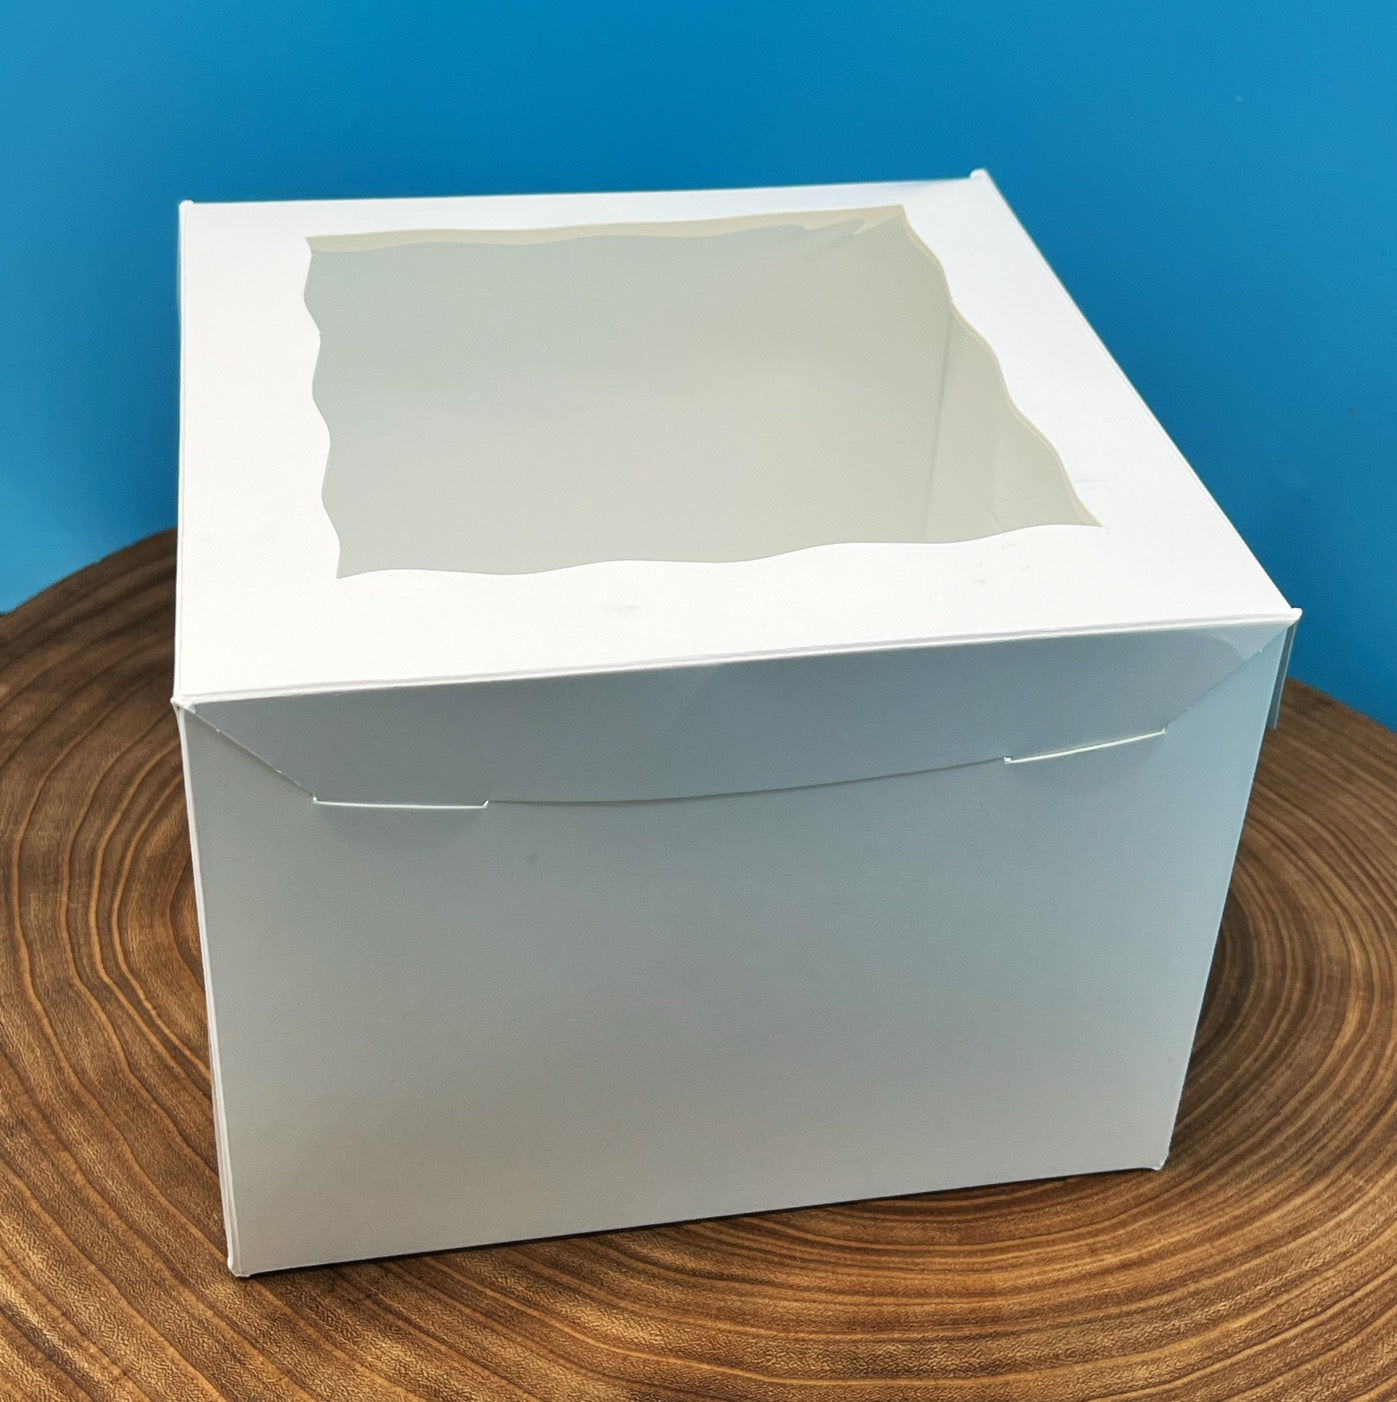 8 Inch Cake Box with Window - 8x8x6